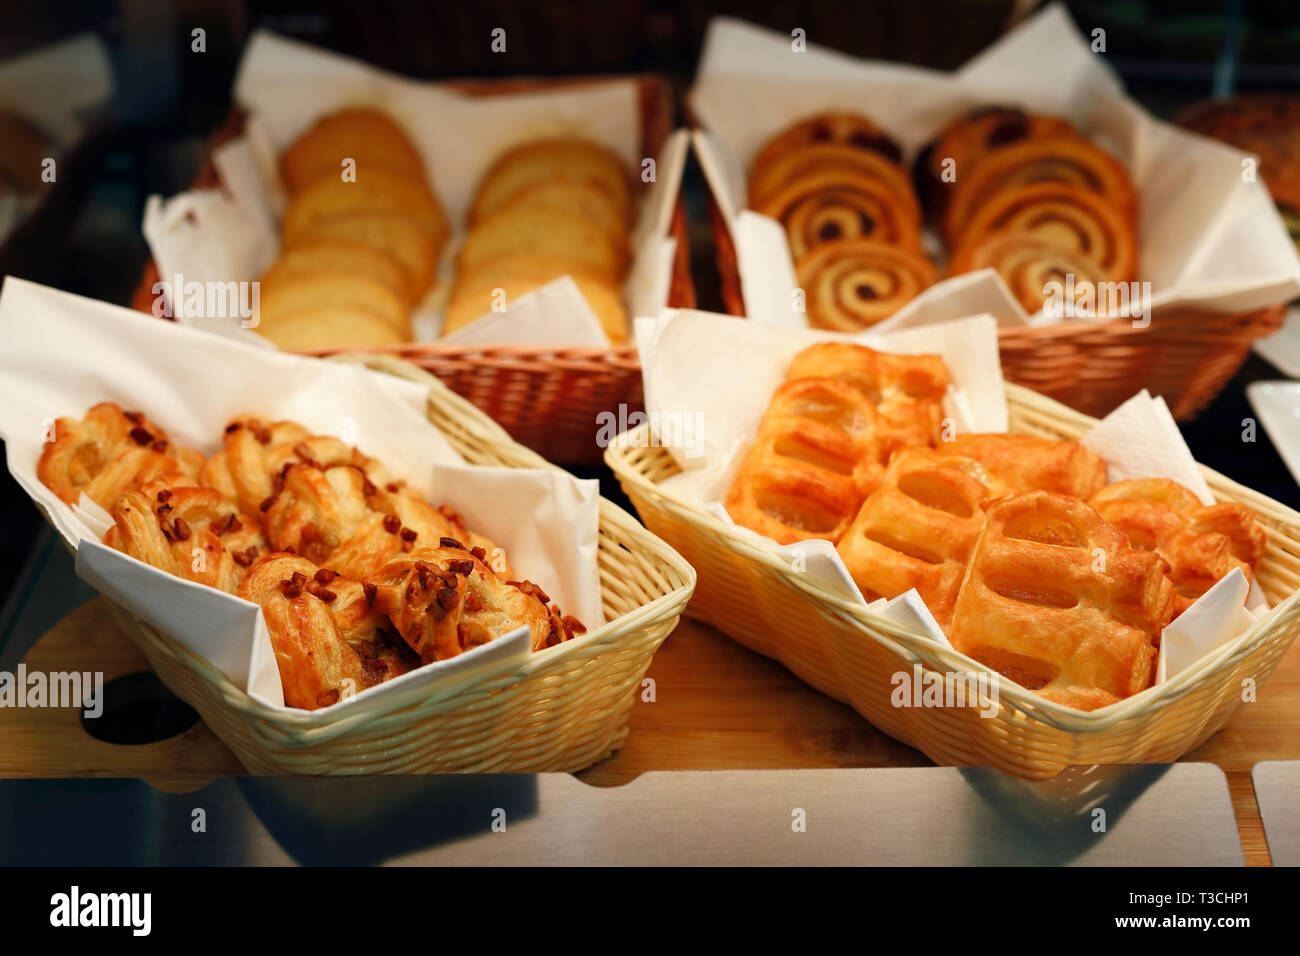 Konditorei Bäckerei Display mit verschiedenen Brötchen und Marmelade Puffs. Stockfoto